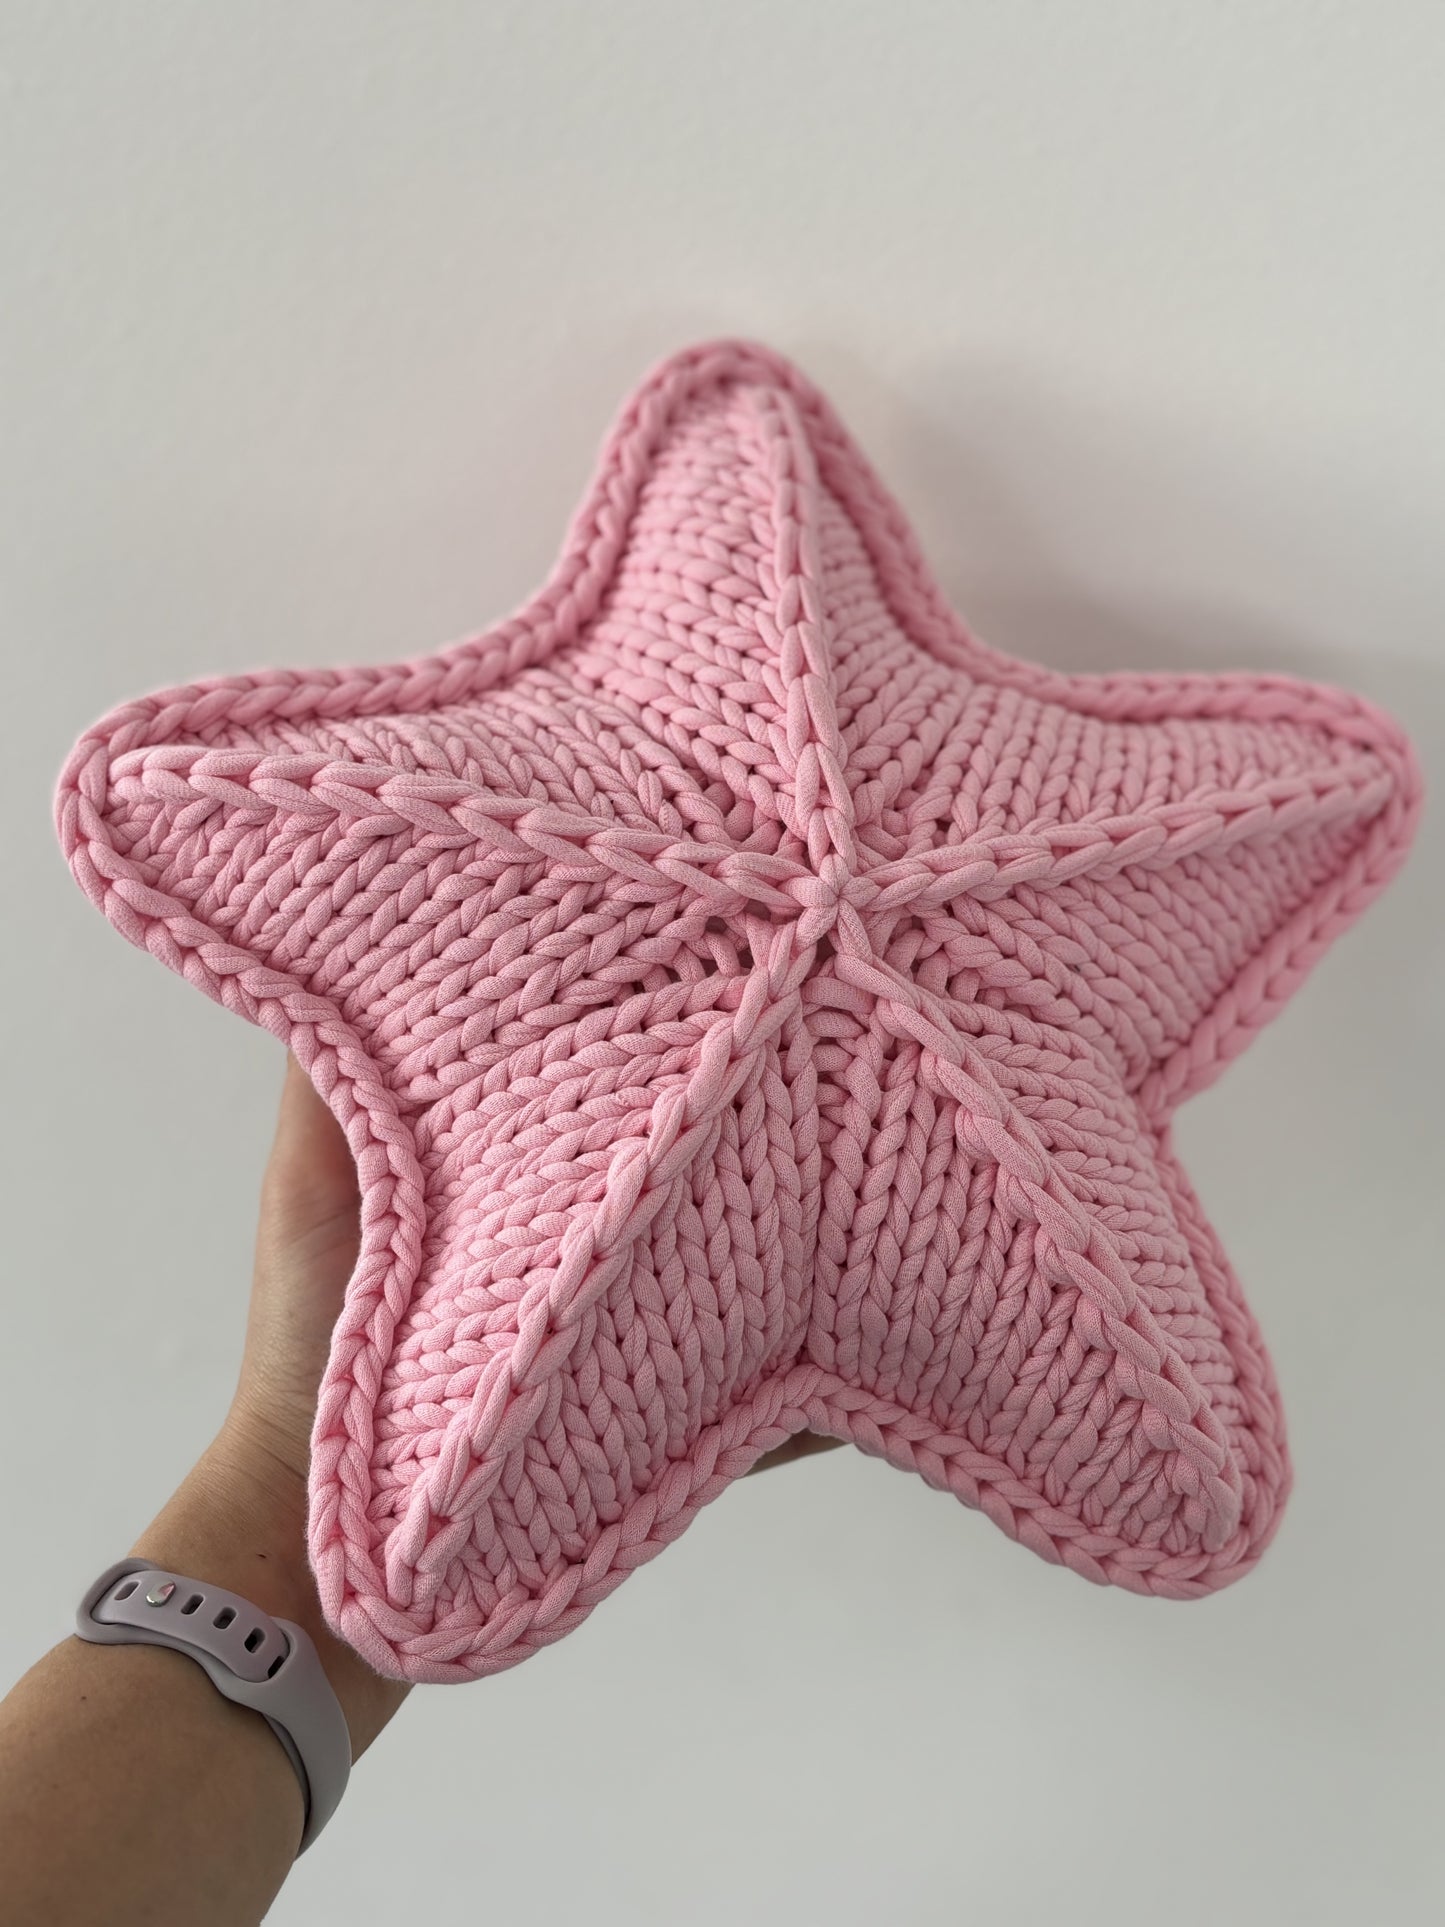 Deko-Kissen Stern aus recycelten Baumwolle